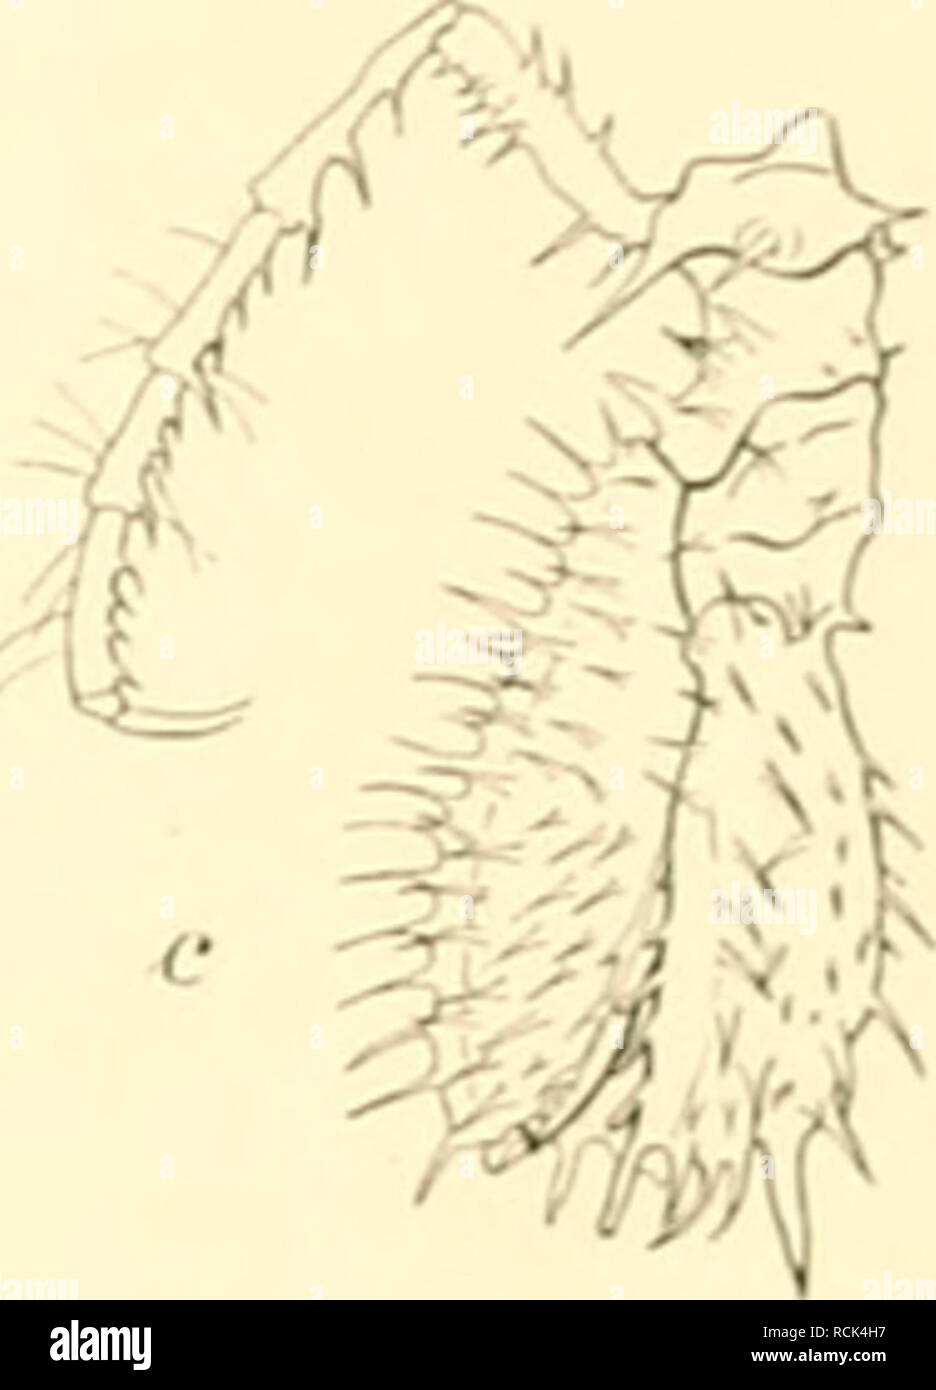 . Die Isopoden der Deutschen Sdpolar-Expedition, 1901-1903. Isopoda z regioni antartiche. liier klein, nur ungefÃ¤hr mezza in modo groÃ wie bei A. glacialis erscheinen, zwei ganz kleine Stacheln und dahinter noch vier Stacheln in einer Querreihe am Kopf auf. Die hintere Partie des Kopfes von A. glacialis ist reicher bedornt. Die Bedornung der Ruinpfsegniente ist Ã¤hnlich wie bei A. glacialis, nur sind bei A. gaussensis die RÃ¼ckendornen kleiner und spÃ¤rlicher und die Seitendornen verhÃ¤ltnismÃ¤Ãig lÃ¤nger, così daÃ der Unterschied in der Bedornung von KÃ¼cken und Seiten schÃ¤rfer hervortritt. Dasselbe Foto Stock